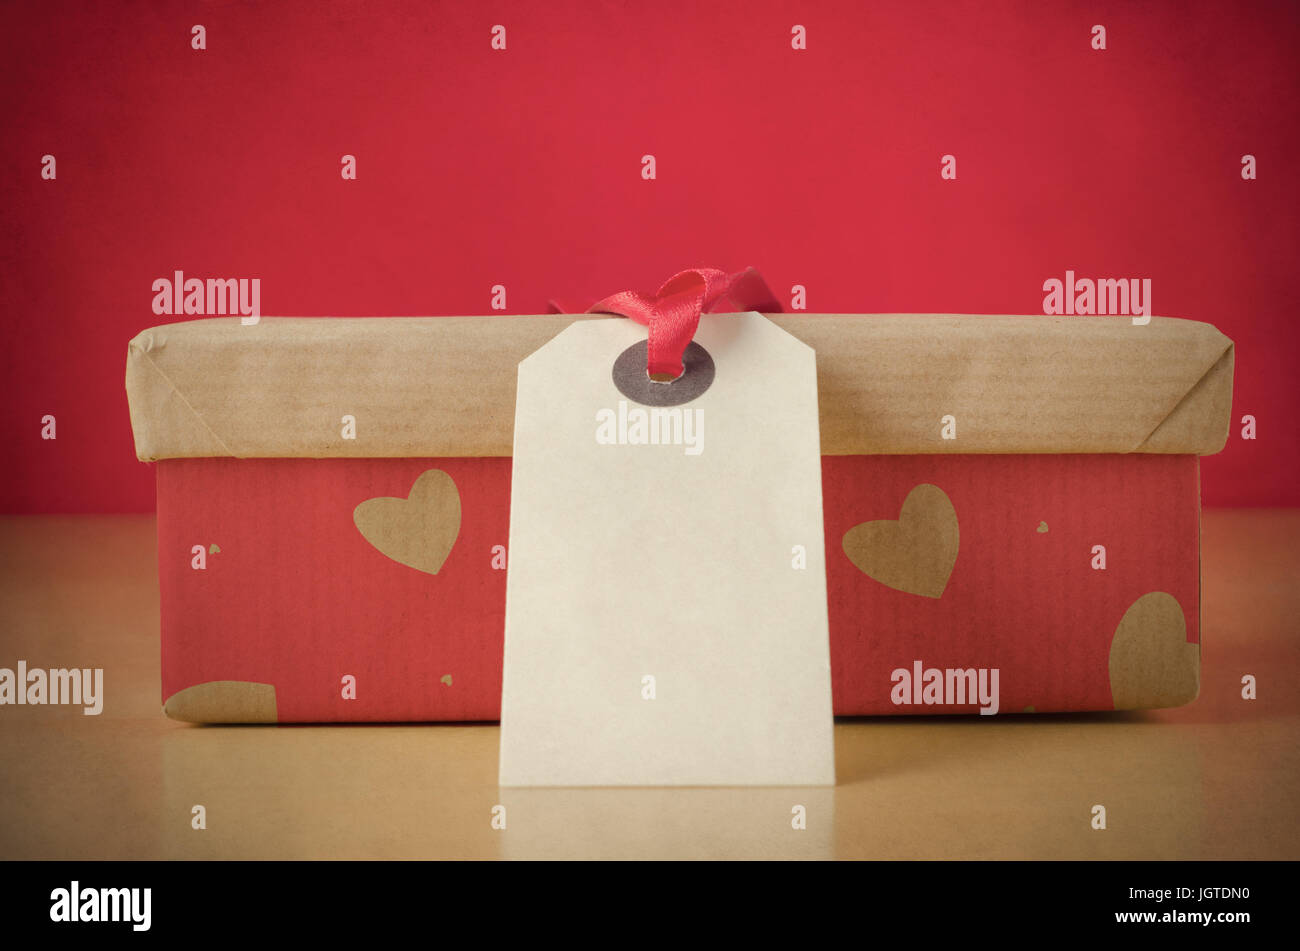 Una chiusa, lidded scatola con carta marrone coperchio e base di rosso su tavola, modellato con forme di cuore. Un'etichetta vuota con un nastro rosso si affaccia il visualizzatore e l Foto Stock